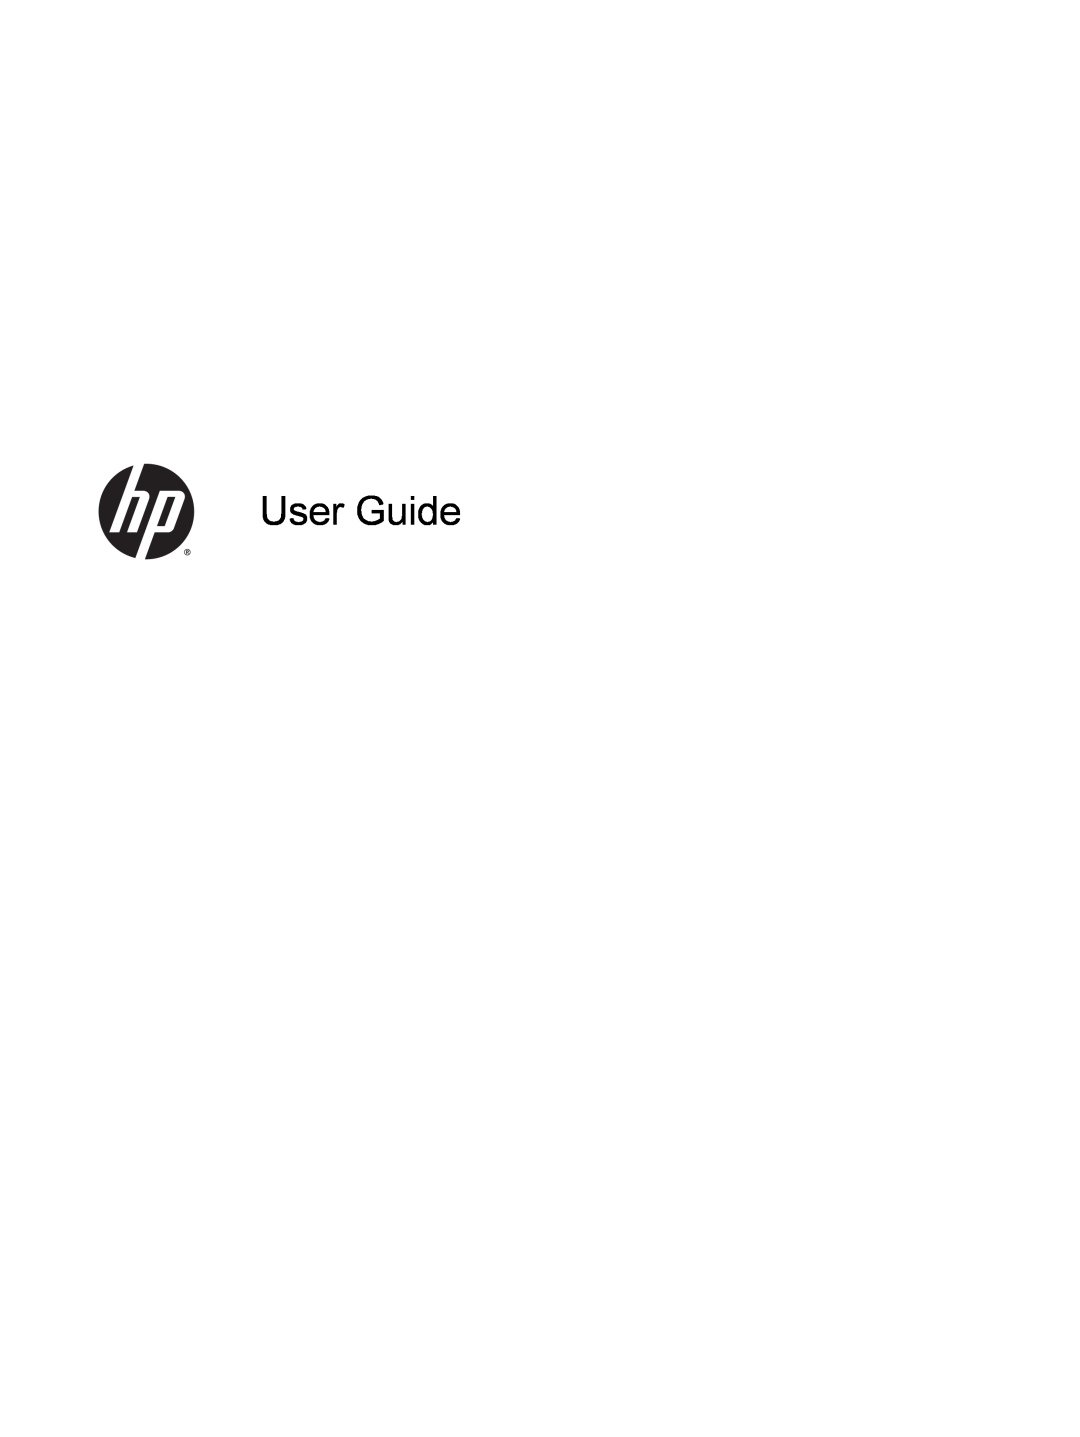 HP 23-p029c, 23-p020t, 23-p017c, 23-p027c, 23-p010, 23-p009, 21-h030z, 21-h130z, 21-h116, 21-h013w, 21-h010 manual User Guide 